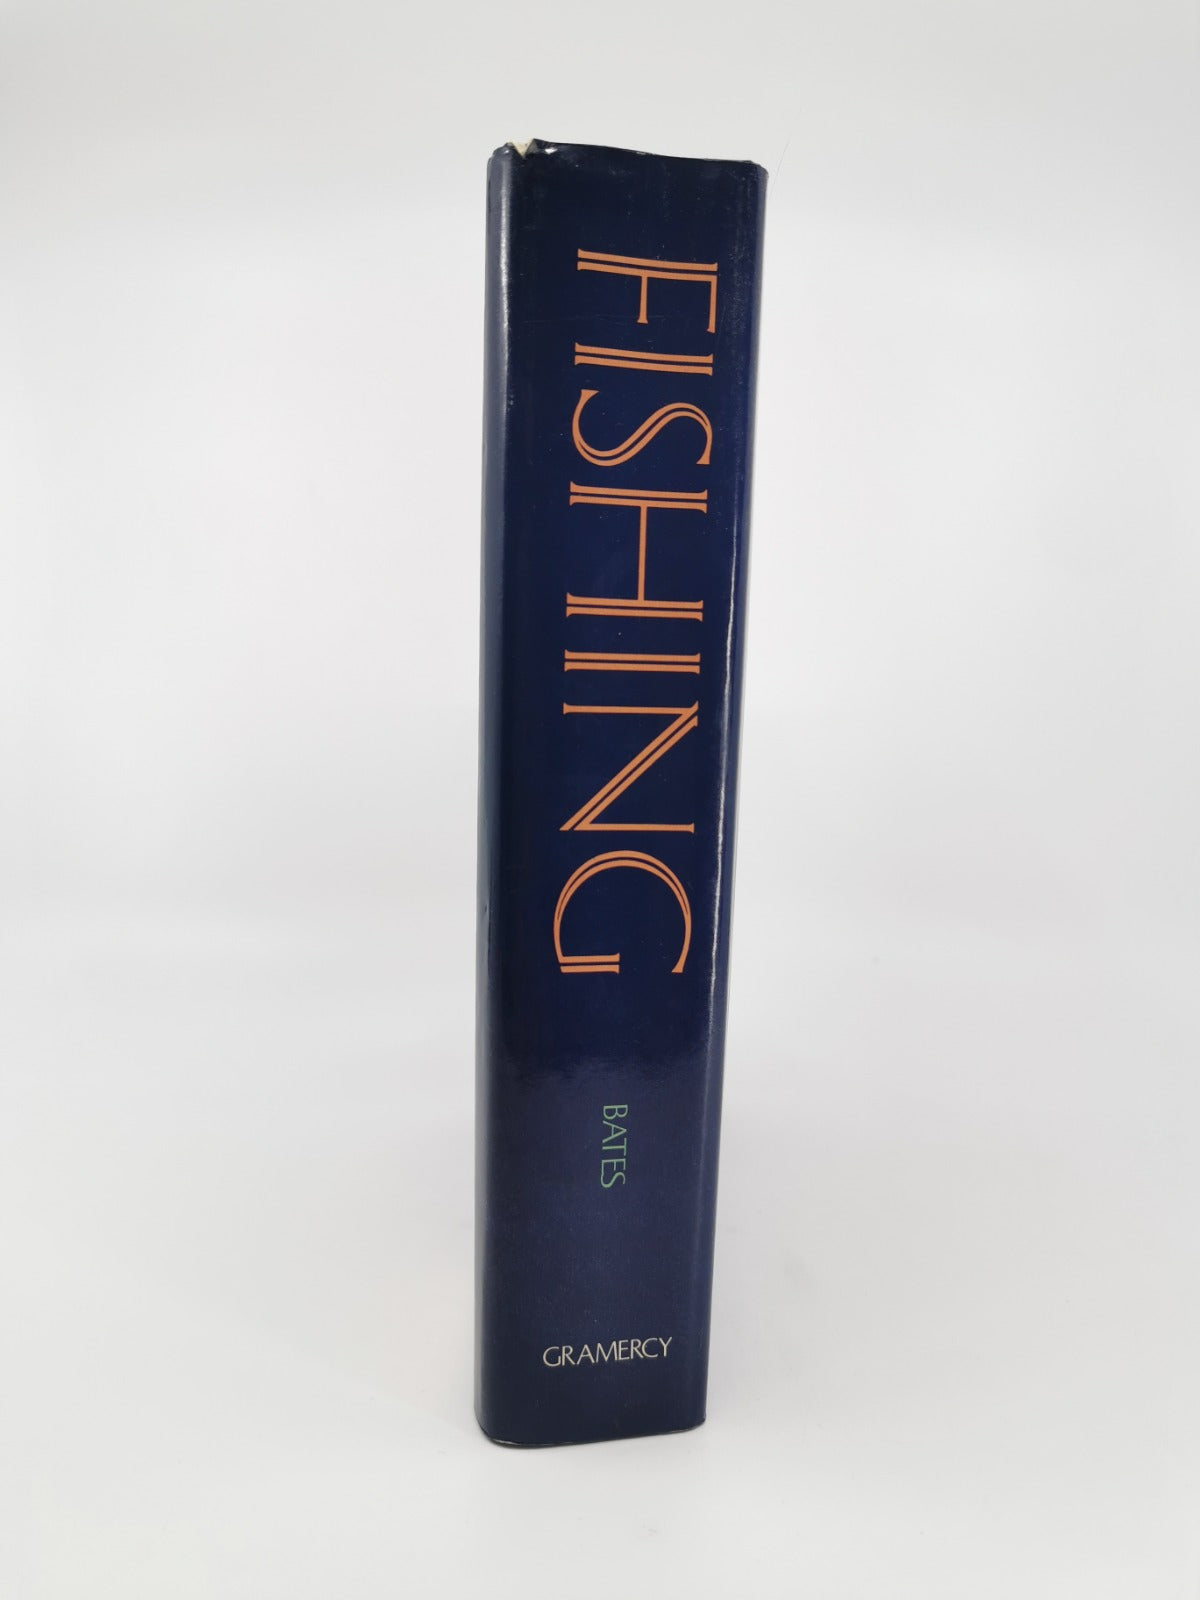 Fishing: An Encyclopedia Guide